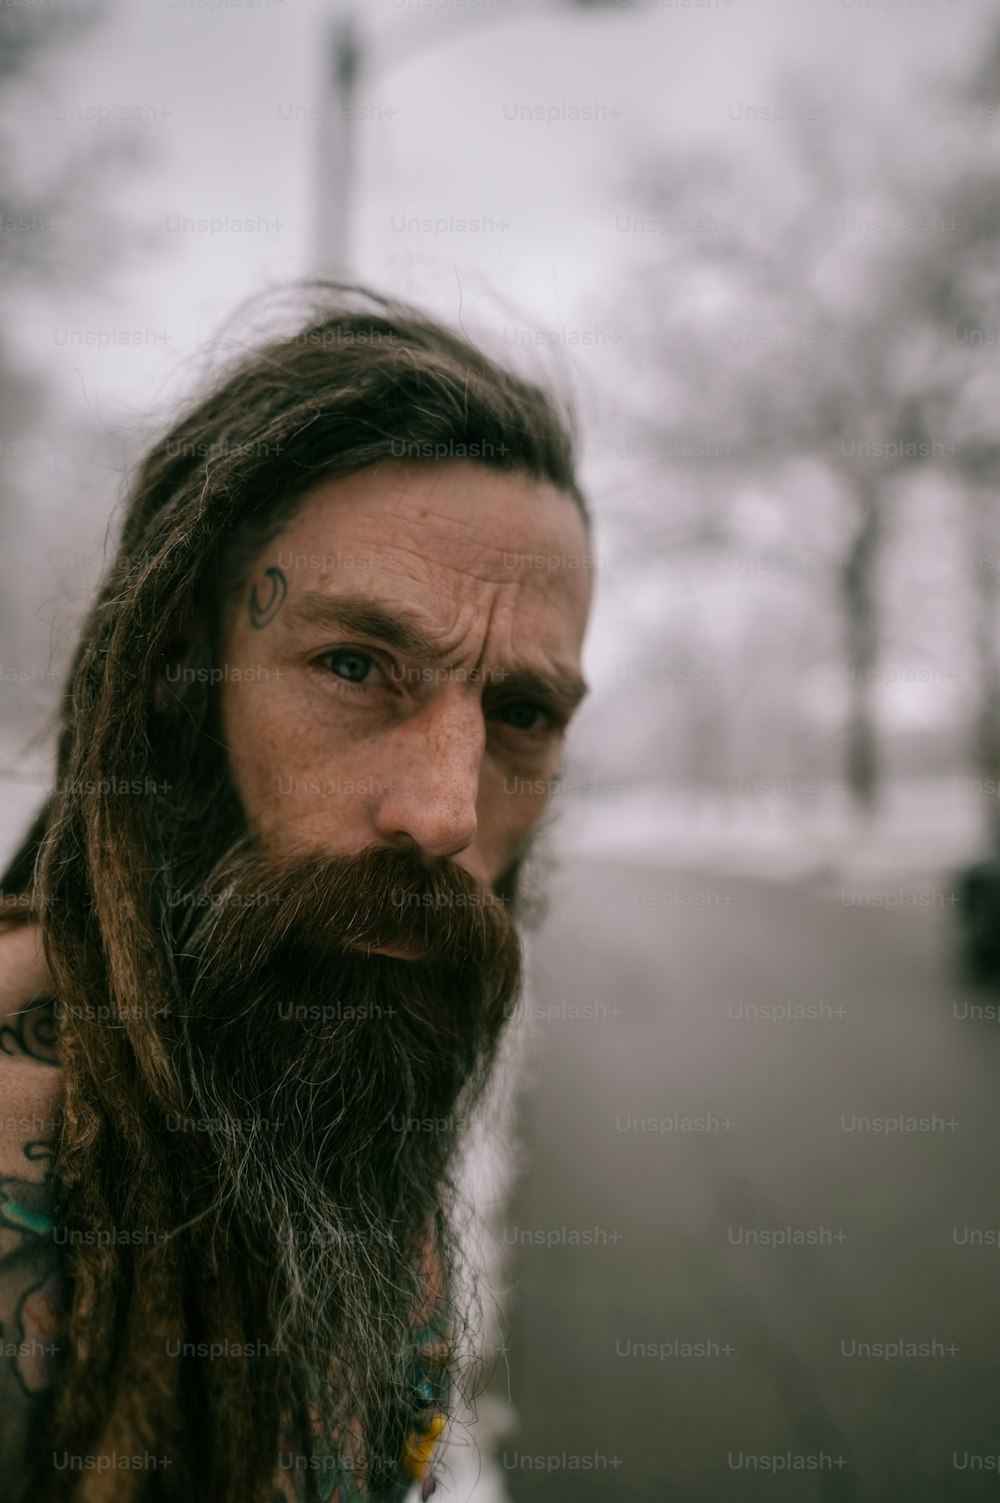 긴 머리와 수염을 가진 남자 사진 – Unsplash의 수염 이미지